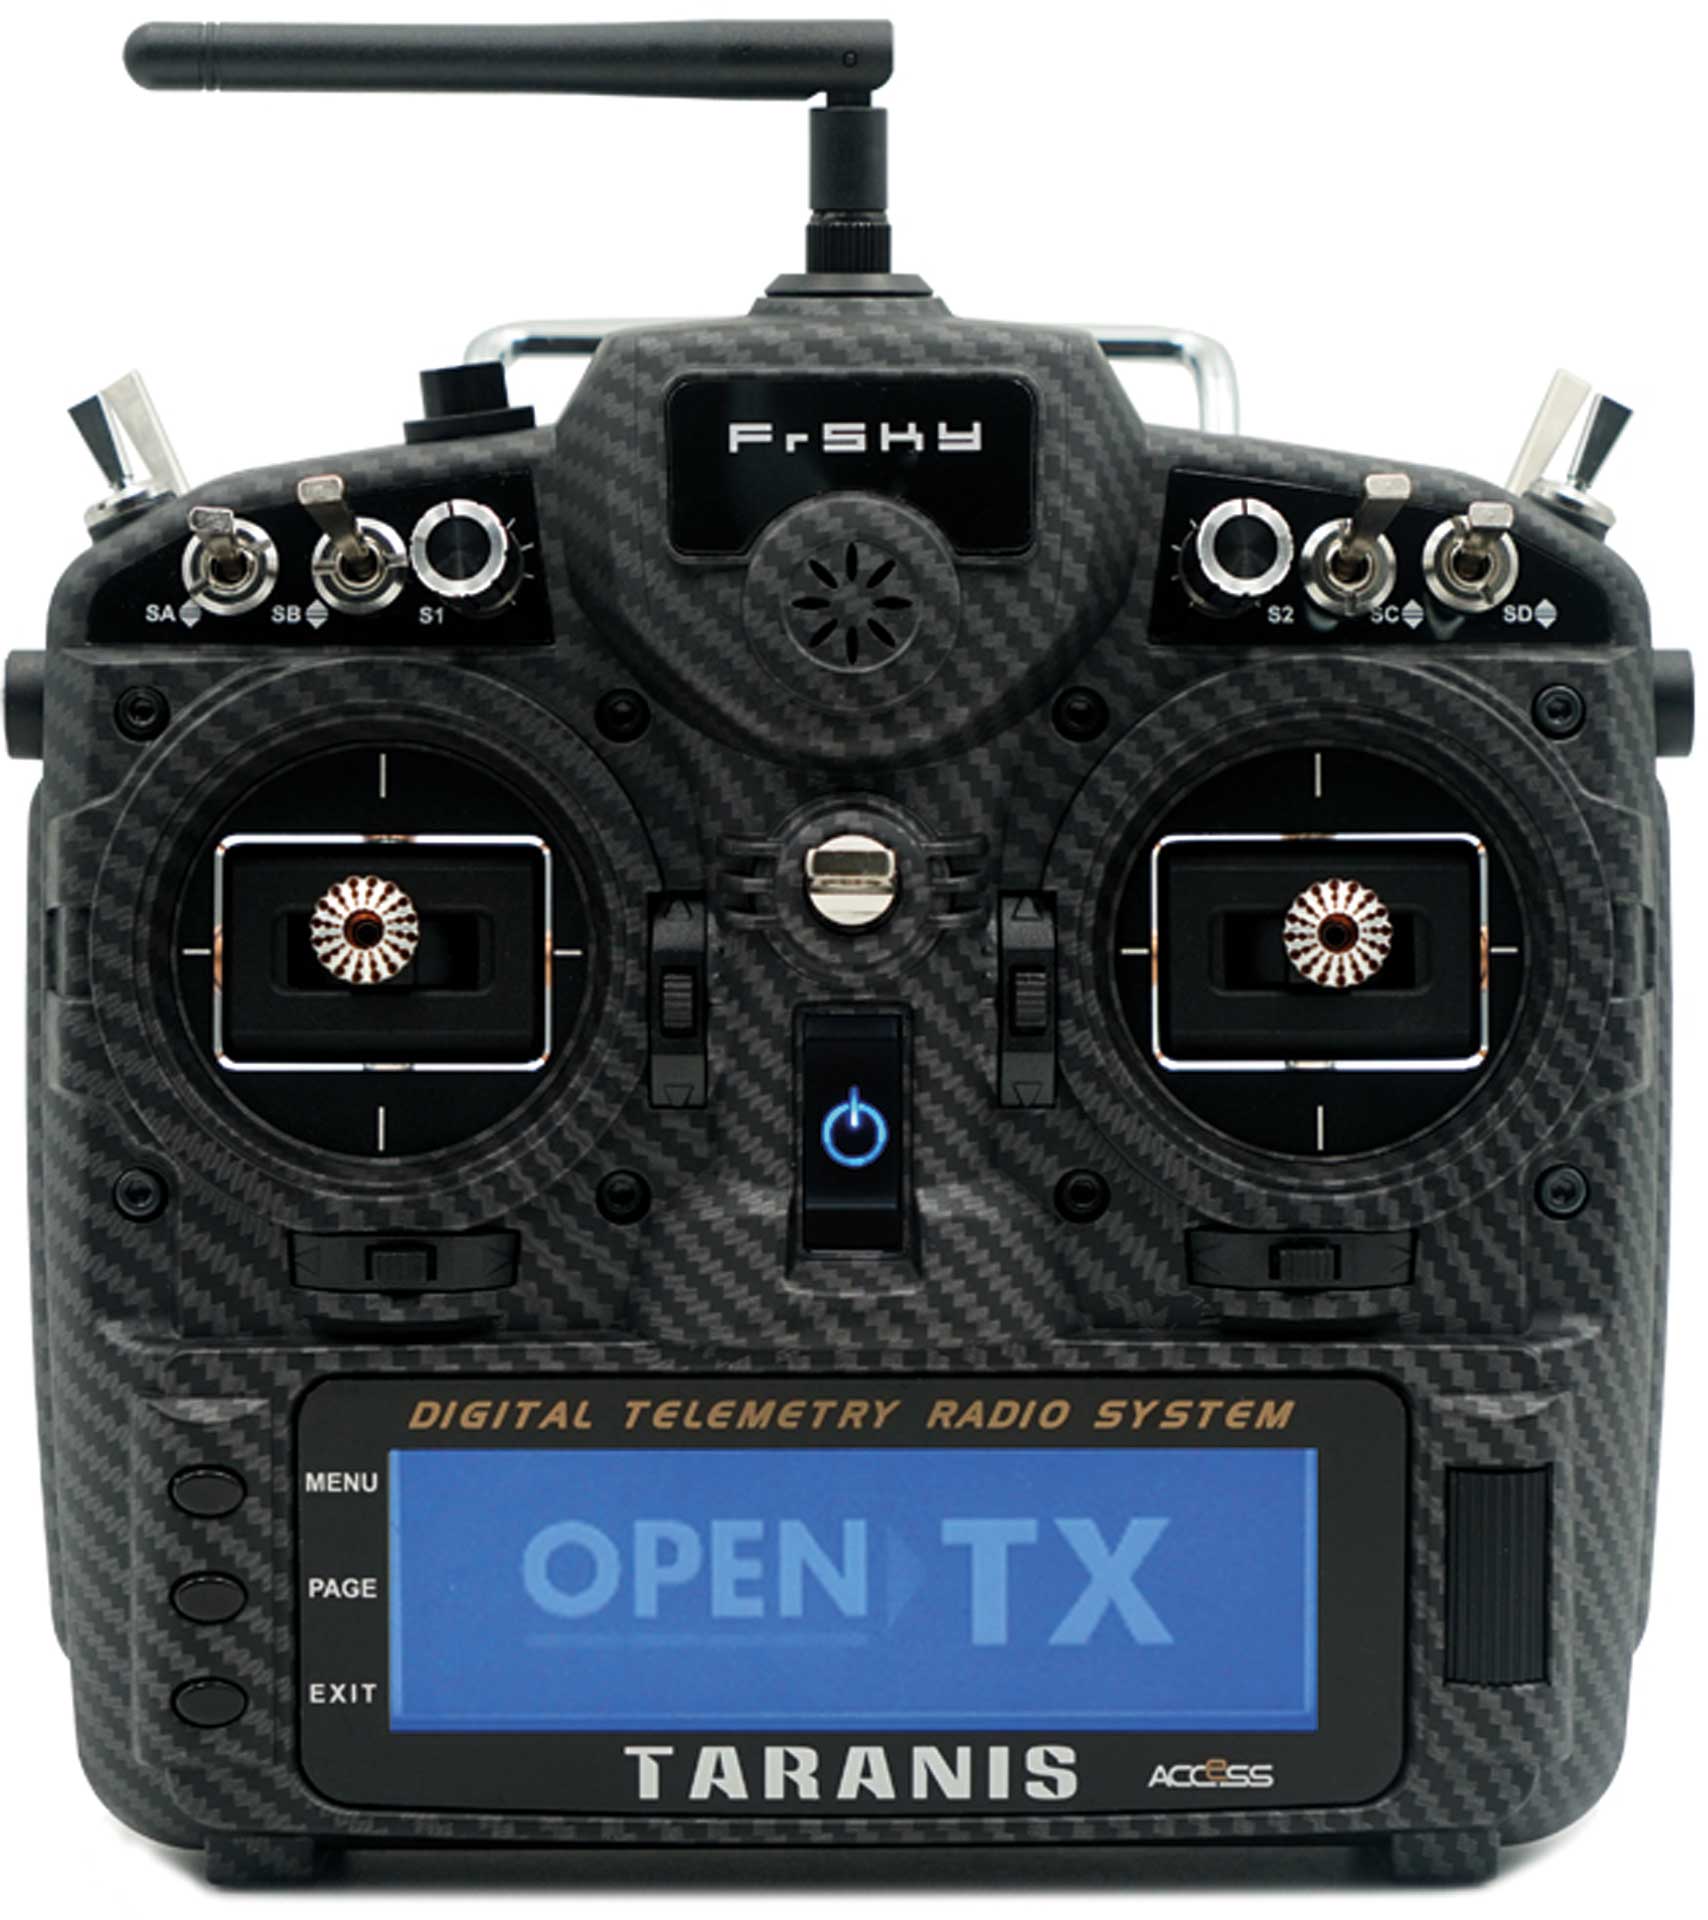 TARANIS X9D plus 2019 SE EU/LBT FrSky Set émetteur Carbon Fiber avec carte SD/bag EVA, sans accu, menu/langue en allemand 2,4Ghz